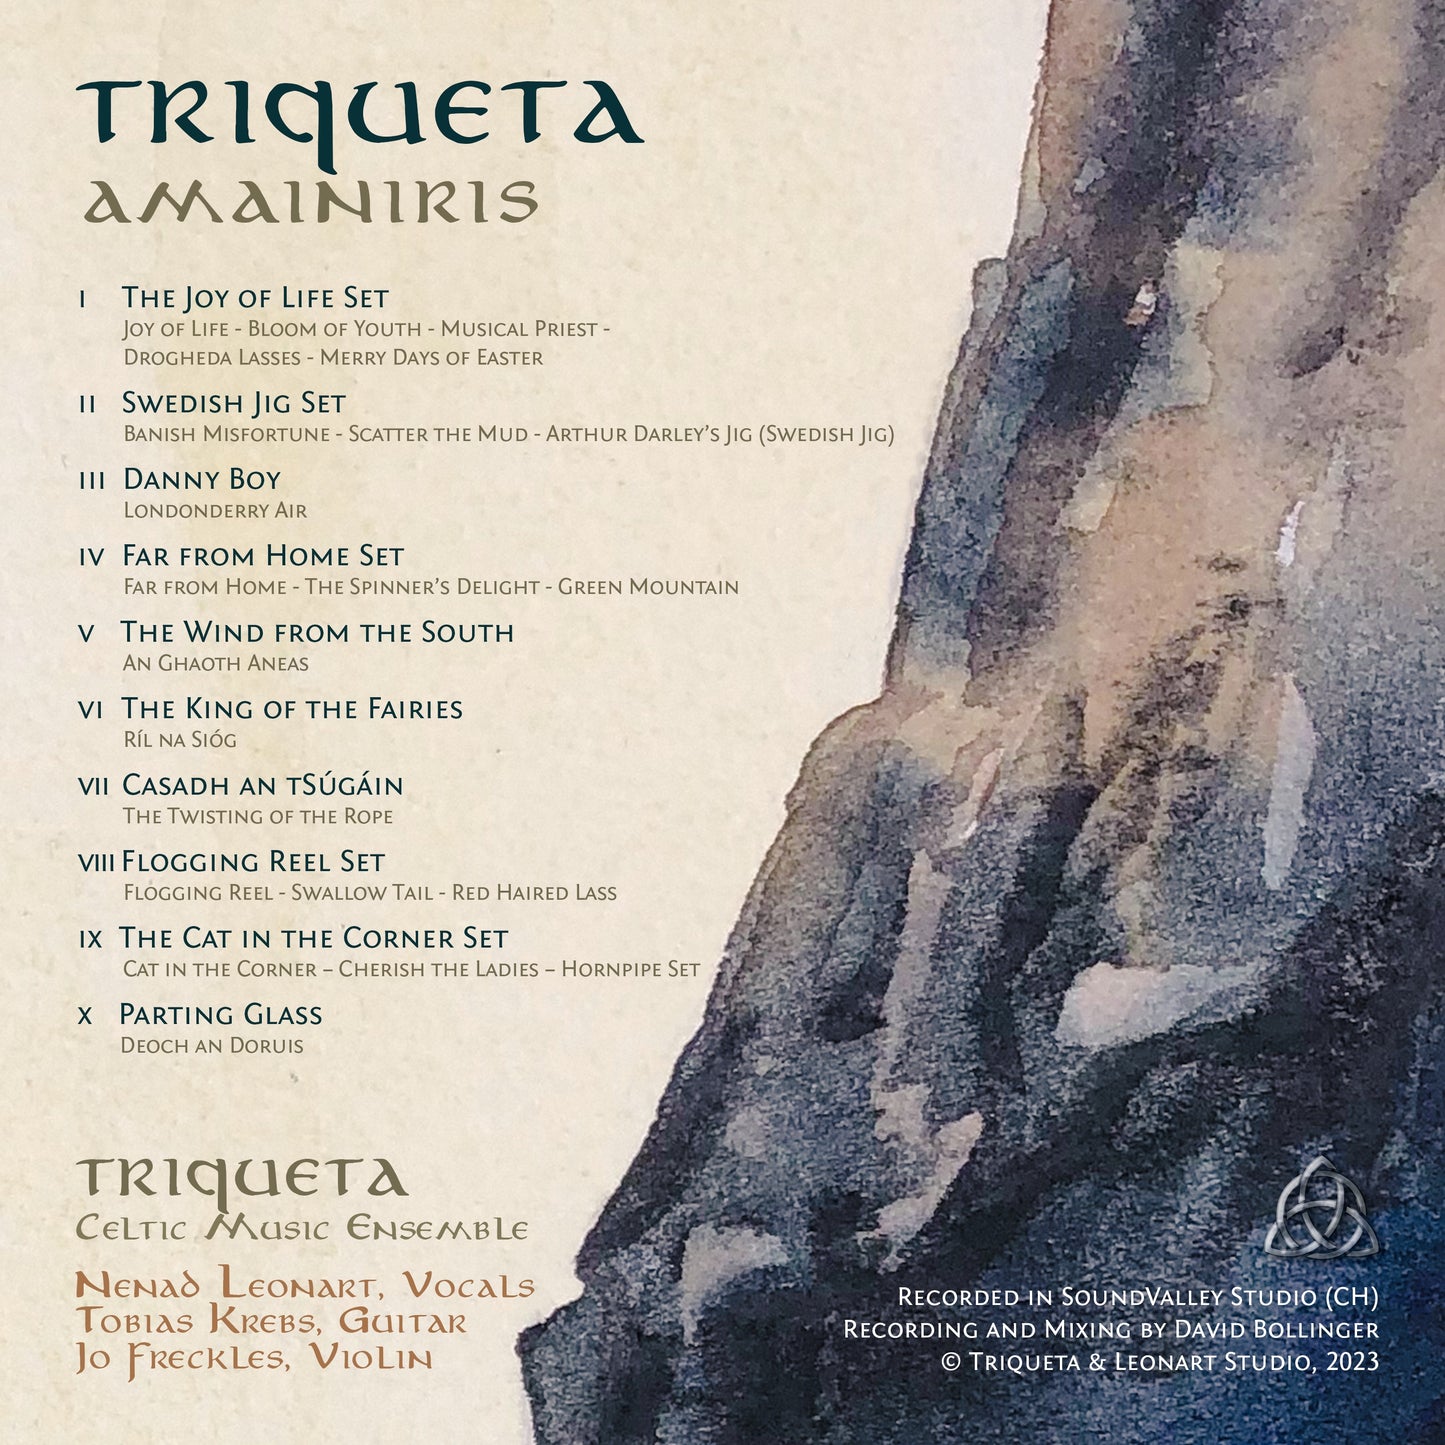 Triqueta »AMAINIRIS« CD